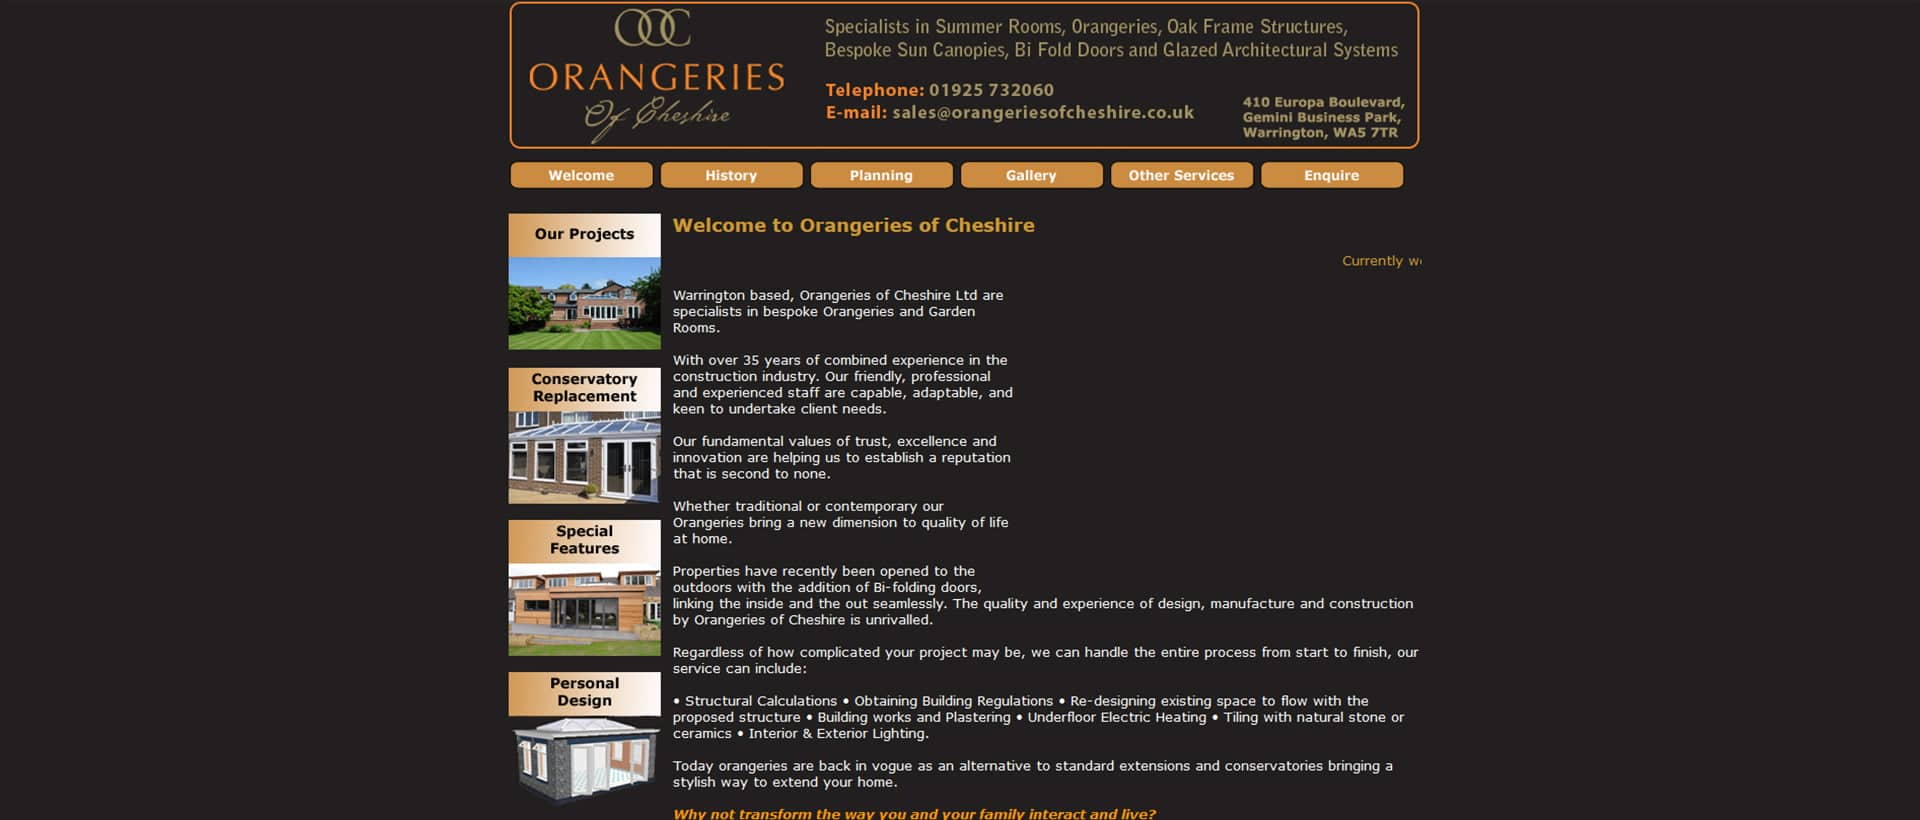 BWS_Orangeries of Cheshire-Before